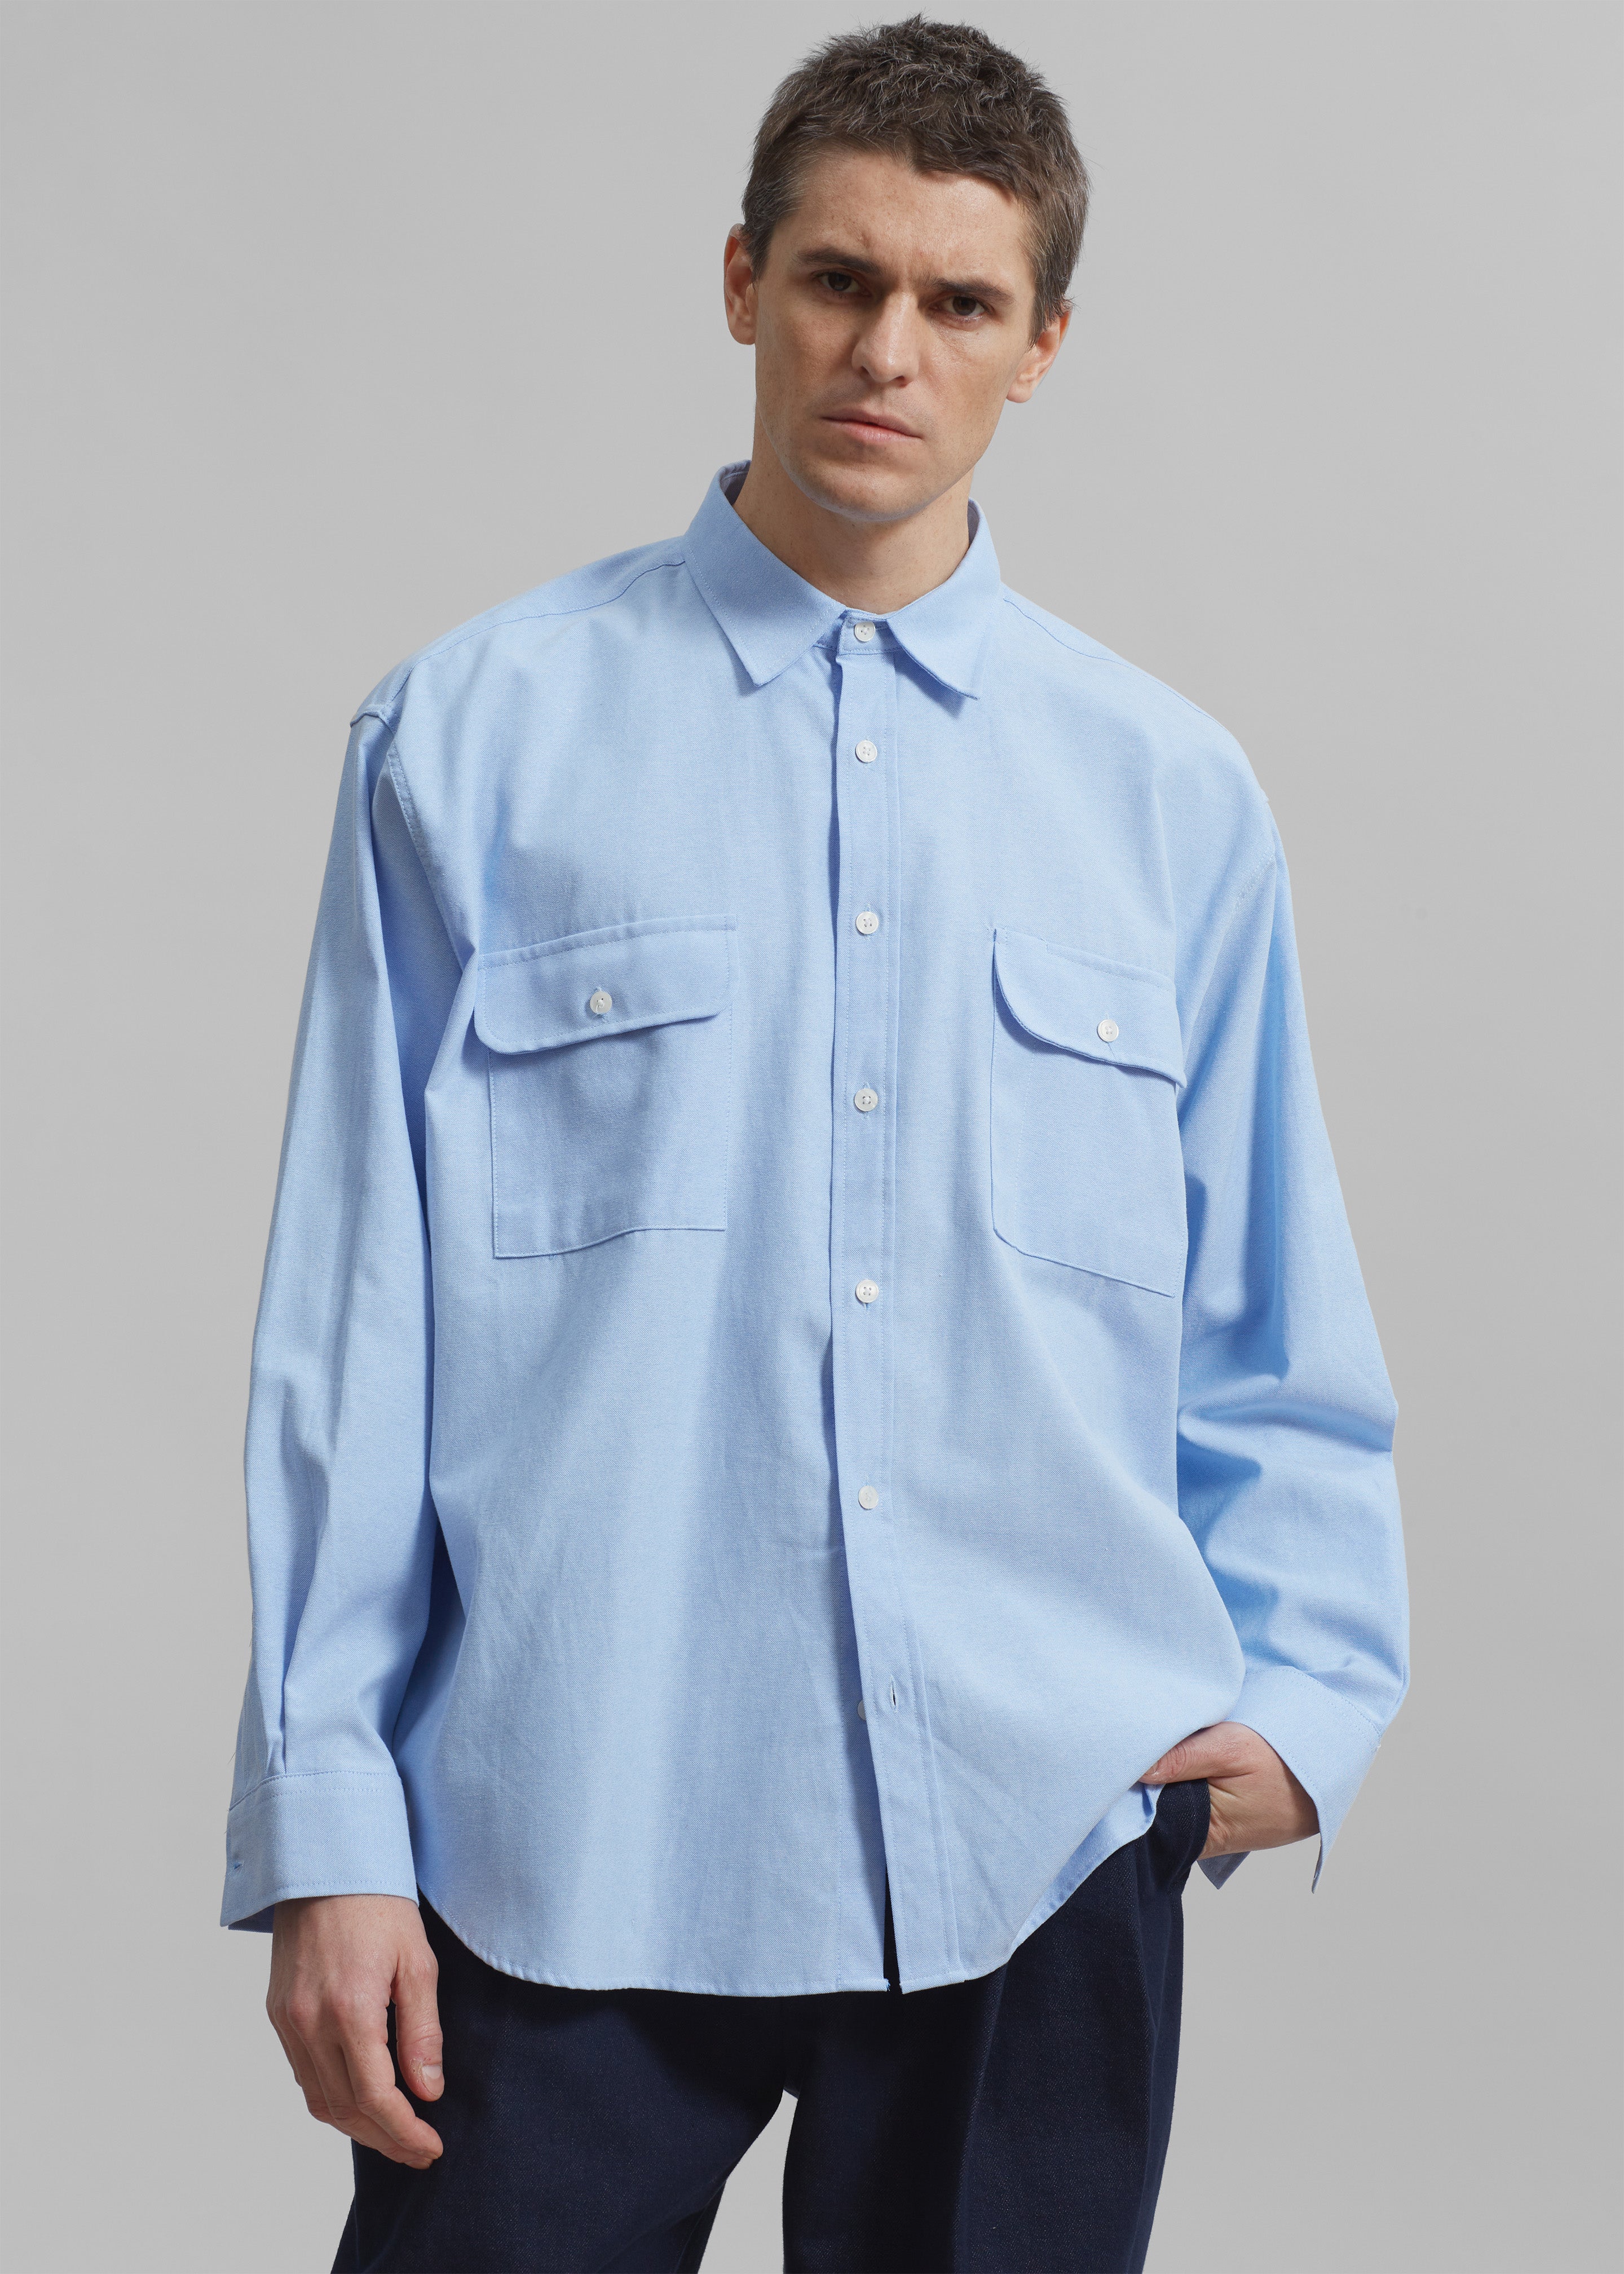 Alexander Button Up Shirt - Blue - 4